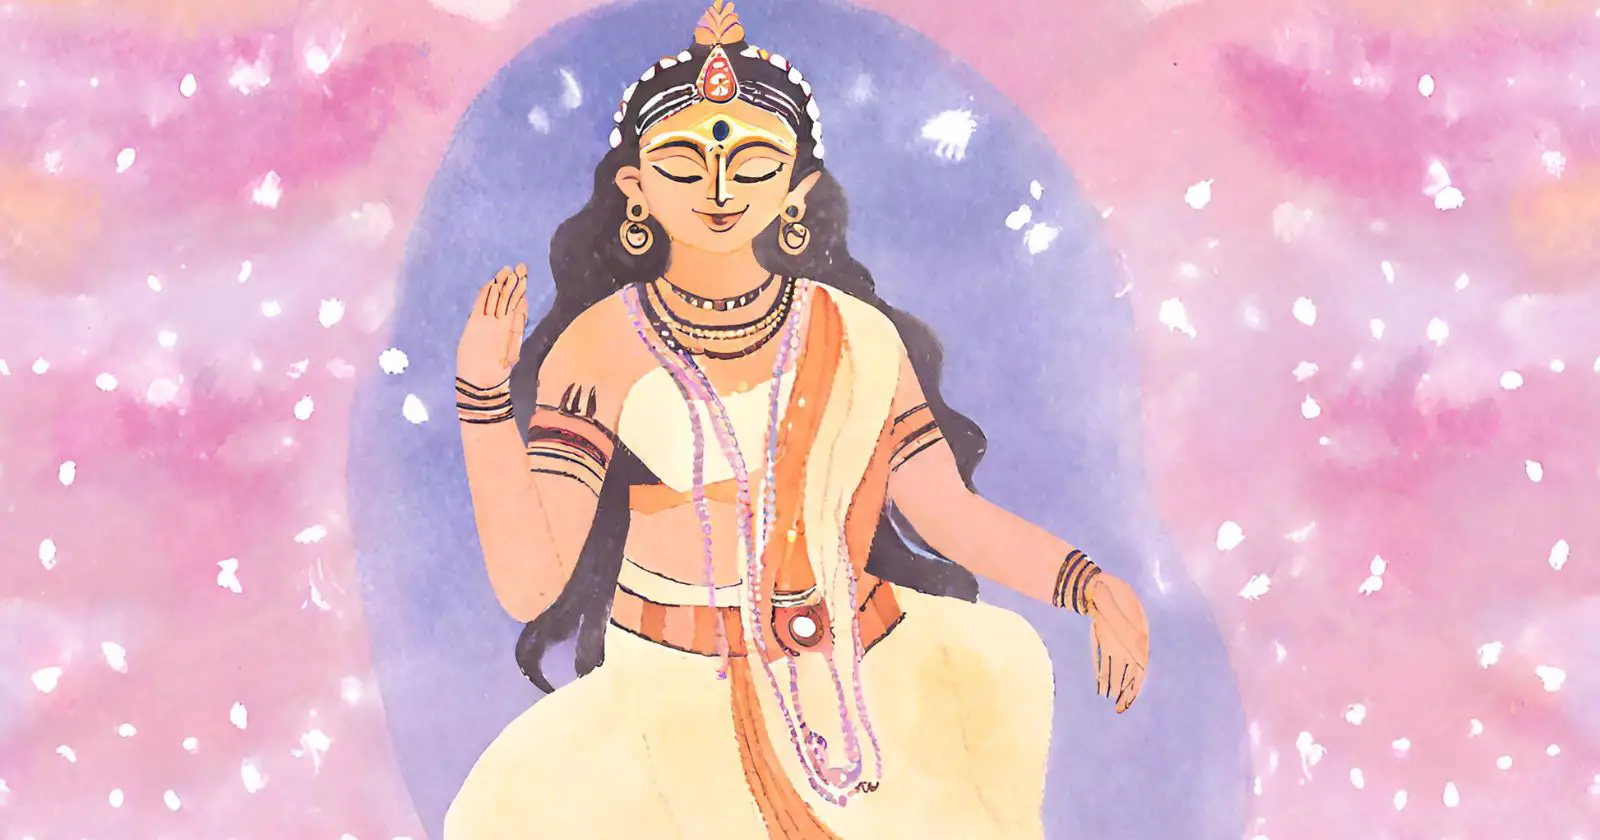 Maya A Deusa Hindu da ilusão e dos sonhos